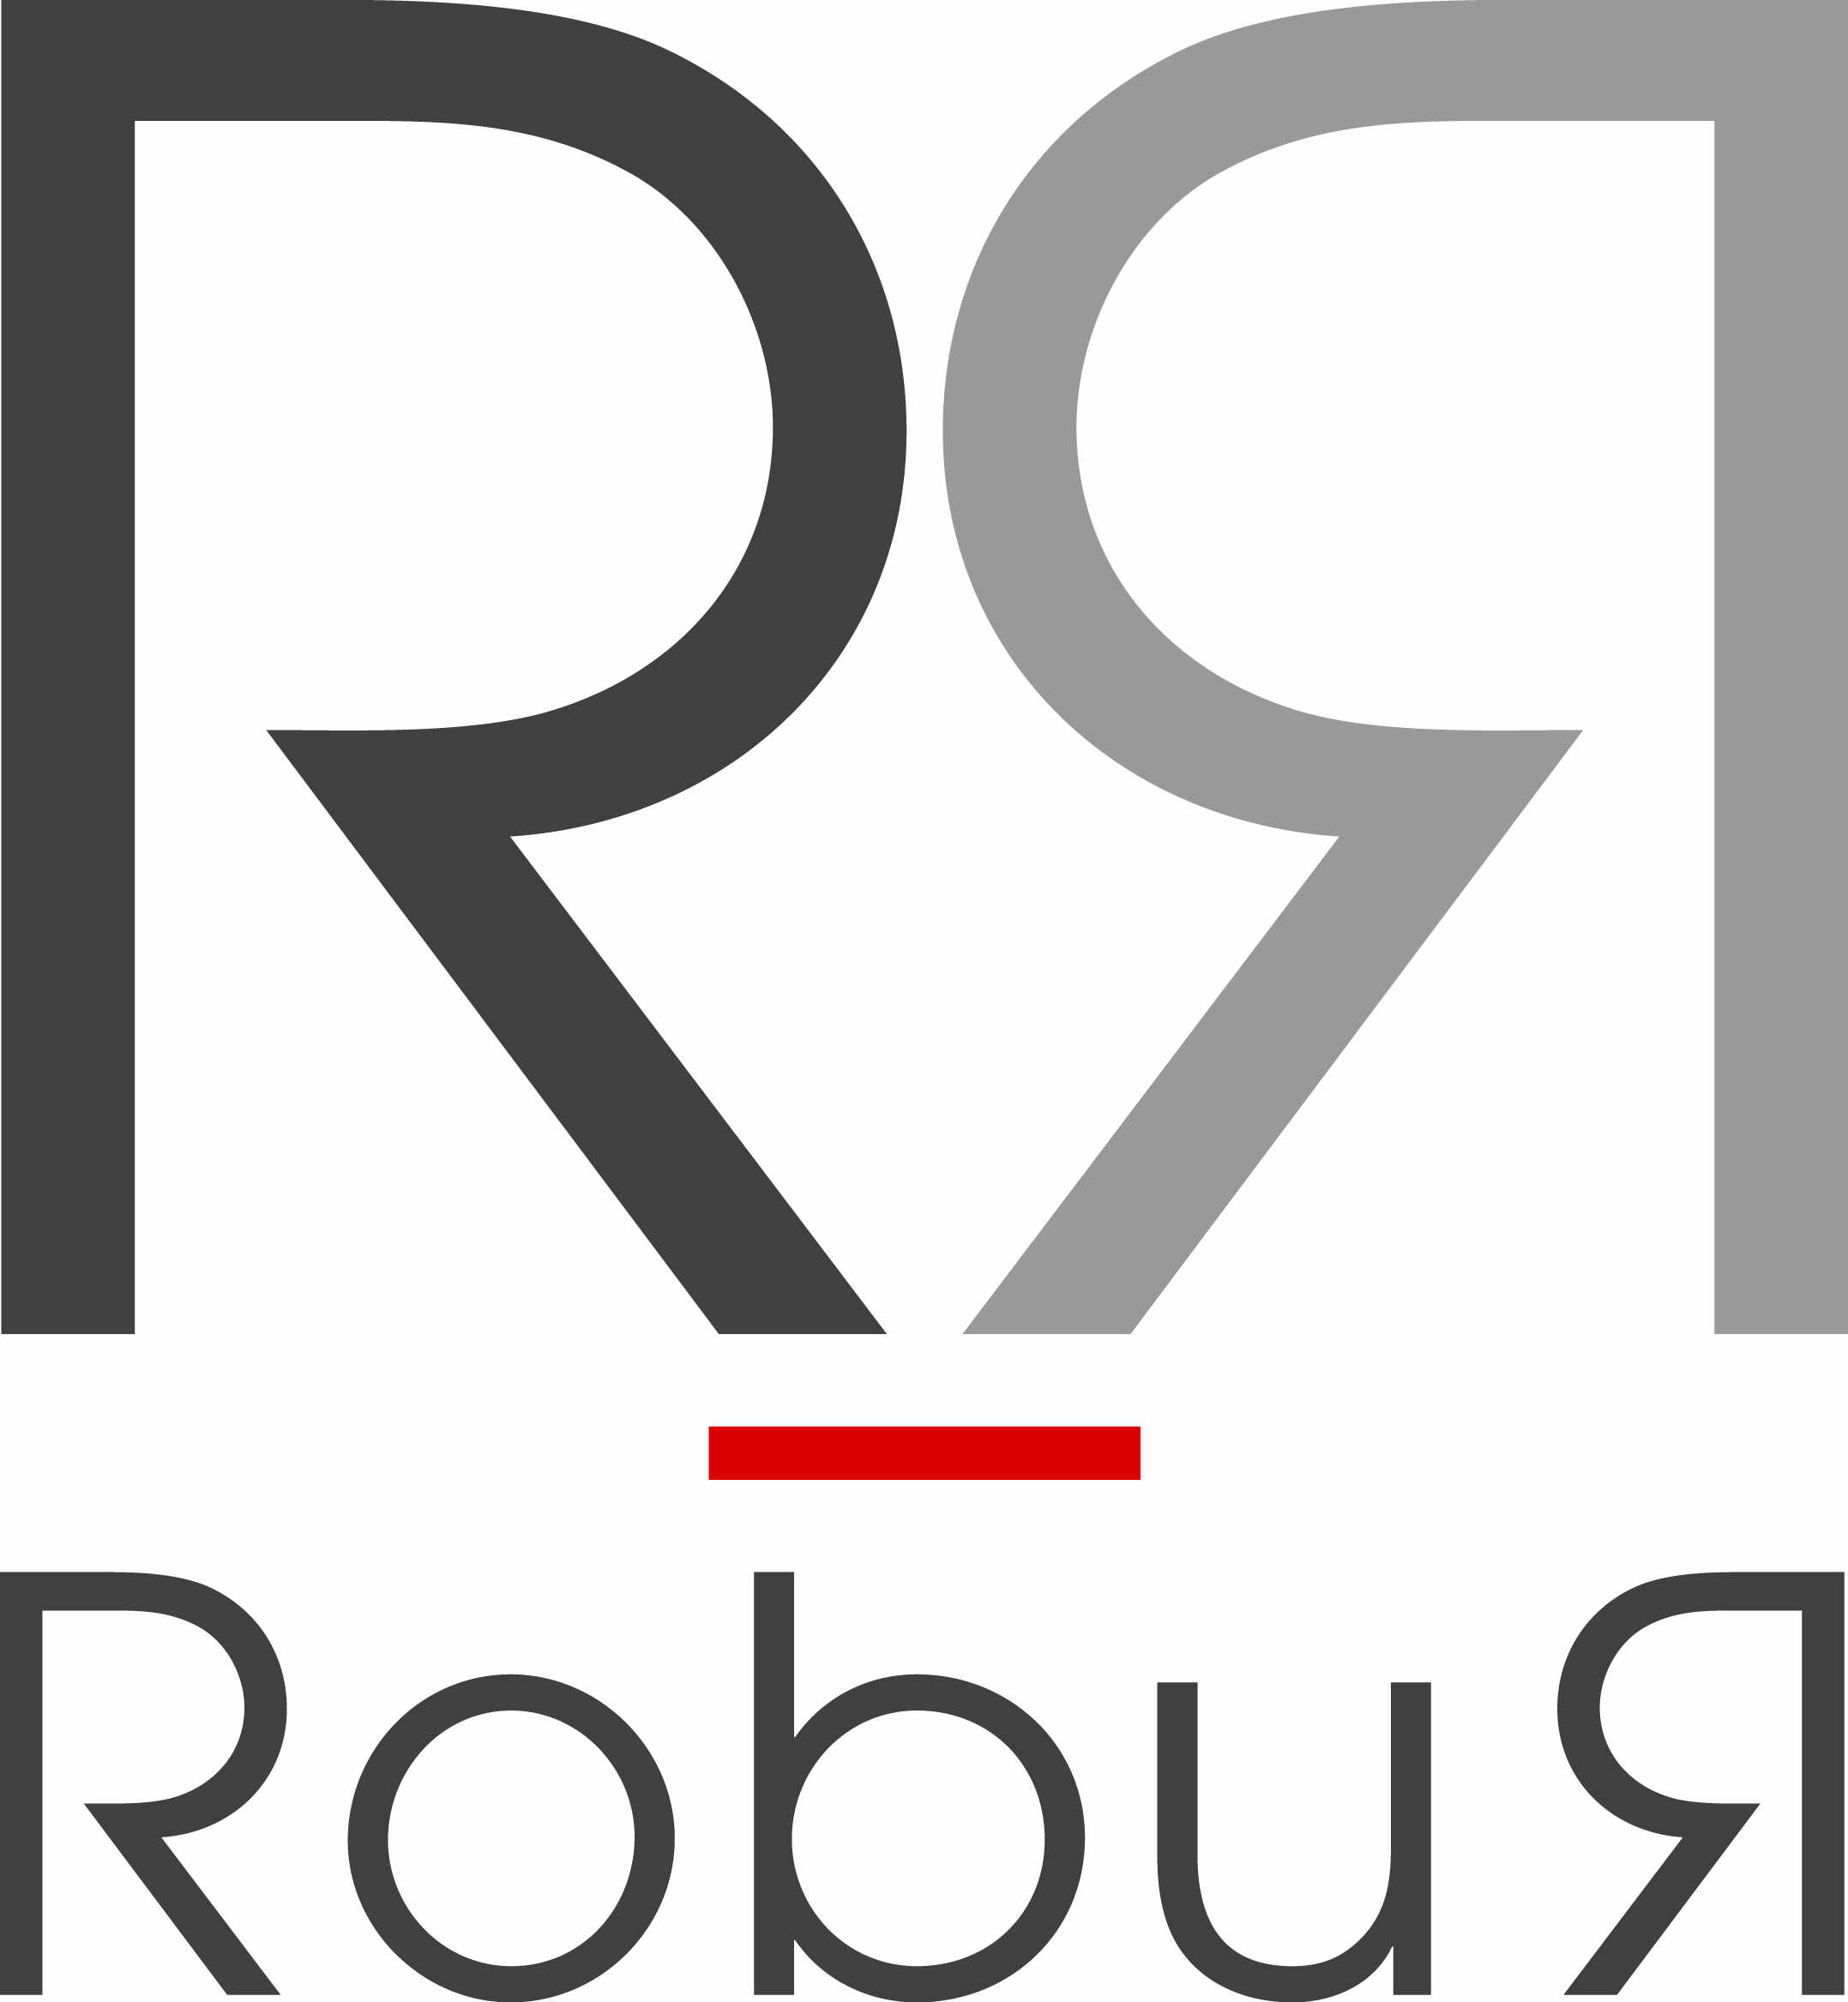 Logo de l'entreprise Robur, fournisseur du Groupe Comptoir.